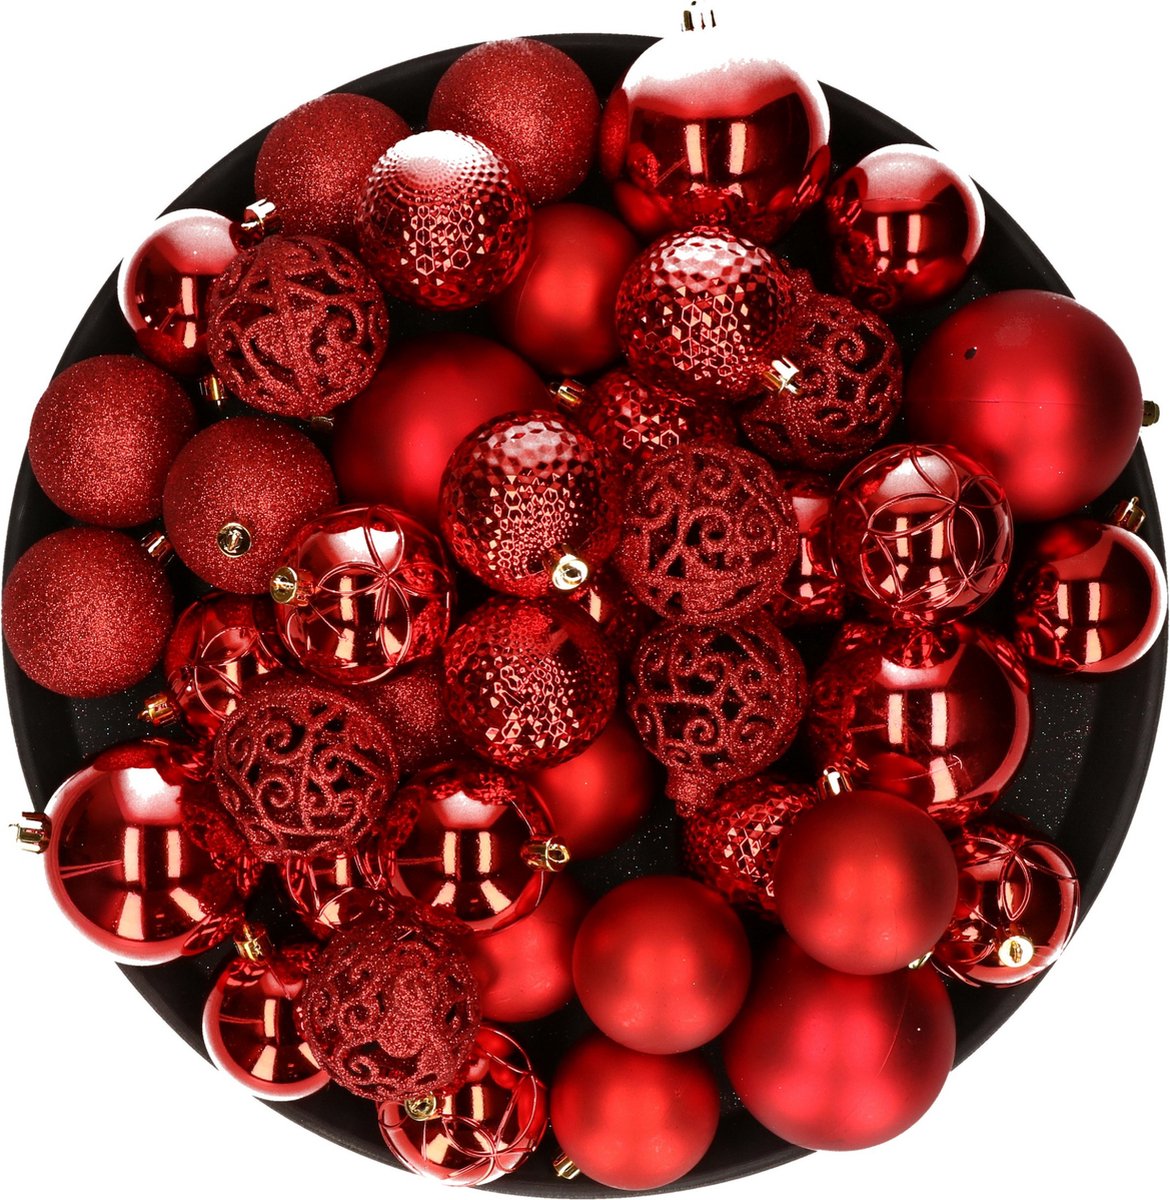 Kerstversiering kunststof kerstballen rood 6-8-10 cm pakket van 36x stuks - Kerstboomversiering